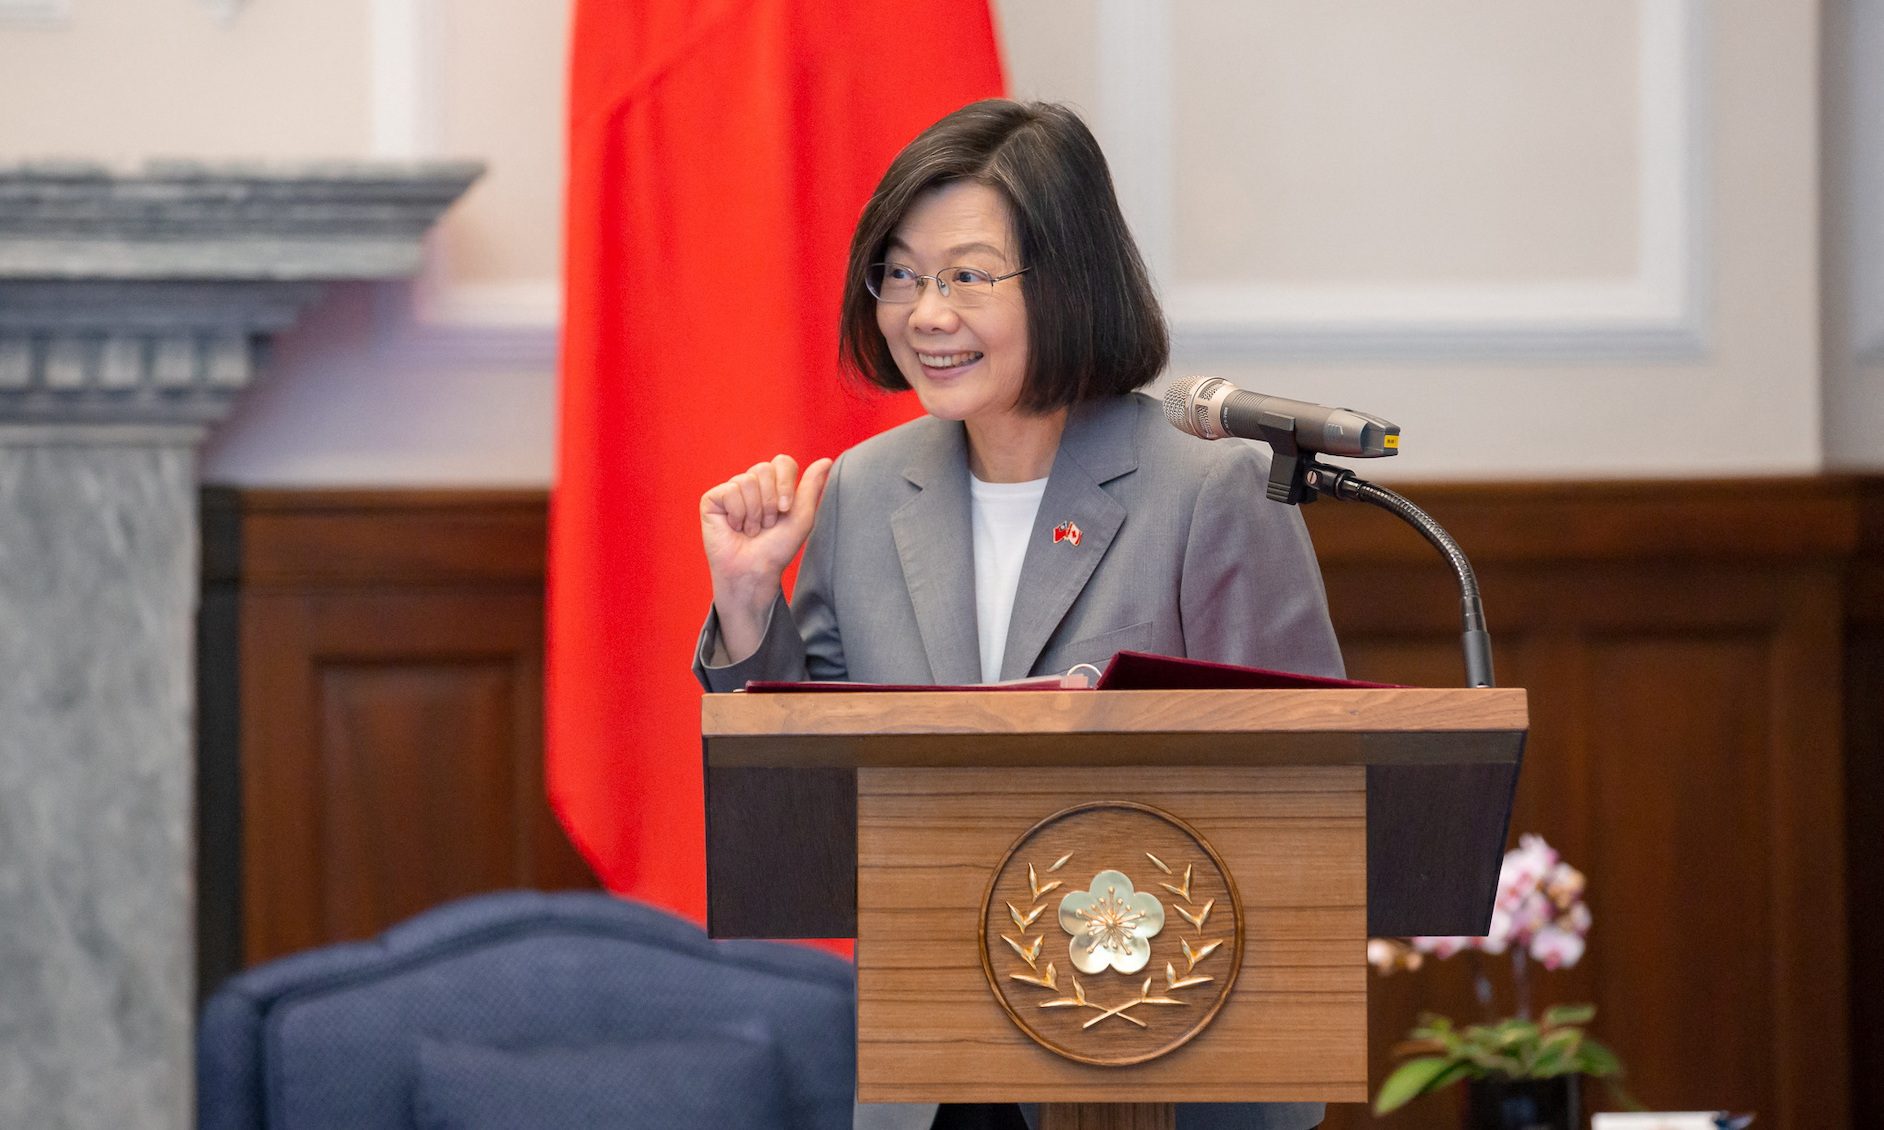 China says Taiwan heading for ‘stormy seas’ under President Tsai